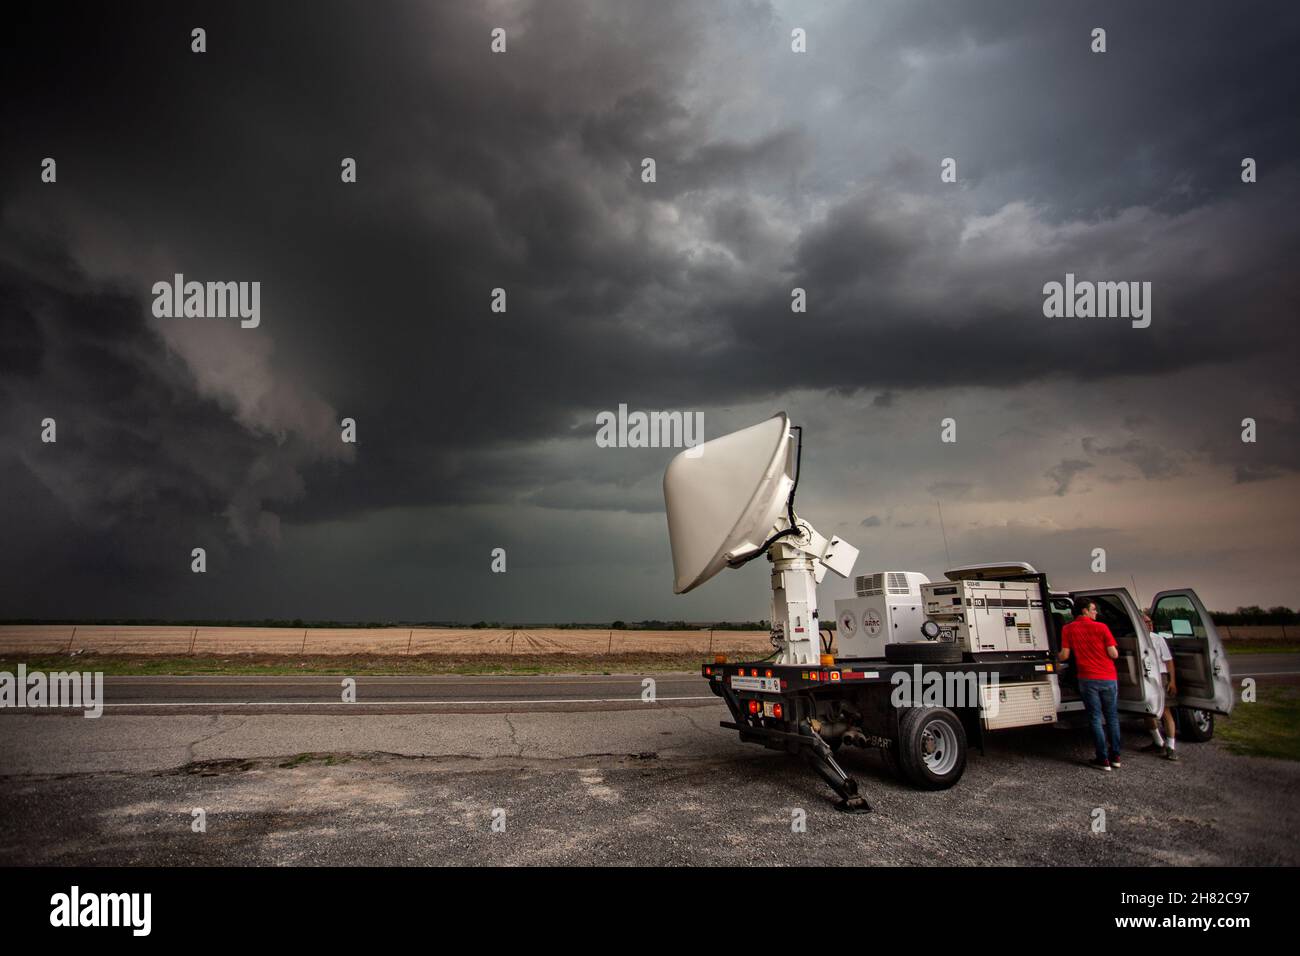 Investigadores de la Universidad de Oklahoma exploran una tormenta de supercélulas con una unidad de radar móvil cerca de Mountain View, Oklahoma, 2 de mayo de 2018. Foto de stock